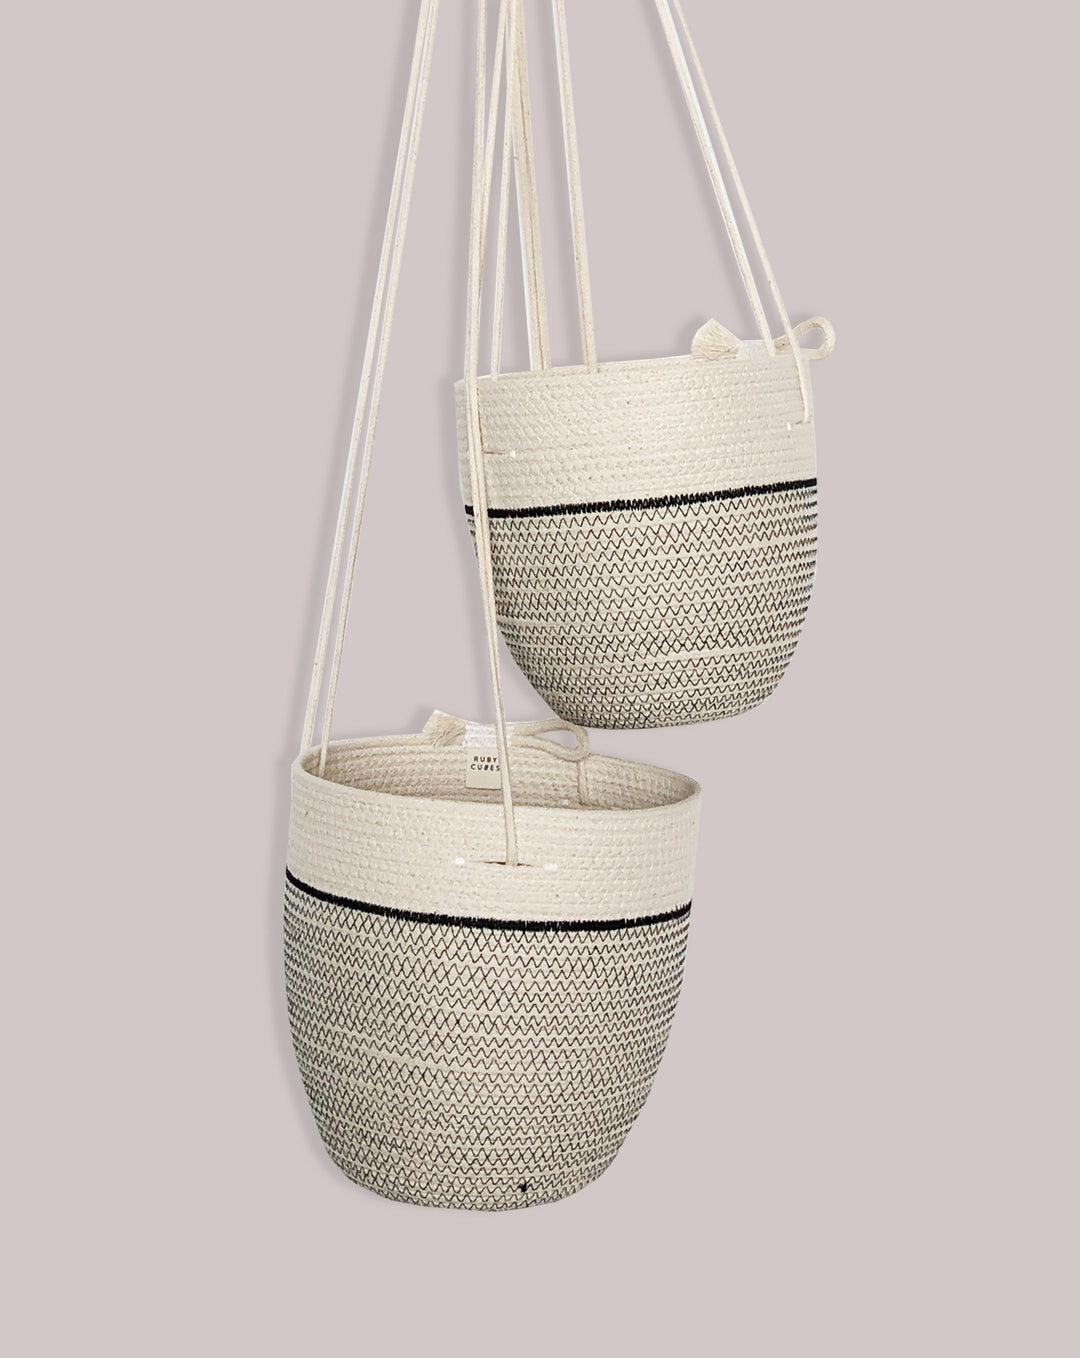 RUBY CUBES KITCHENWARE Organic Cotton Hanging Basket. Black - Large.